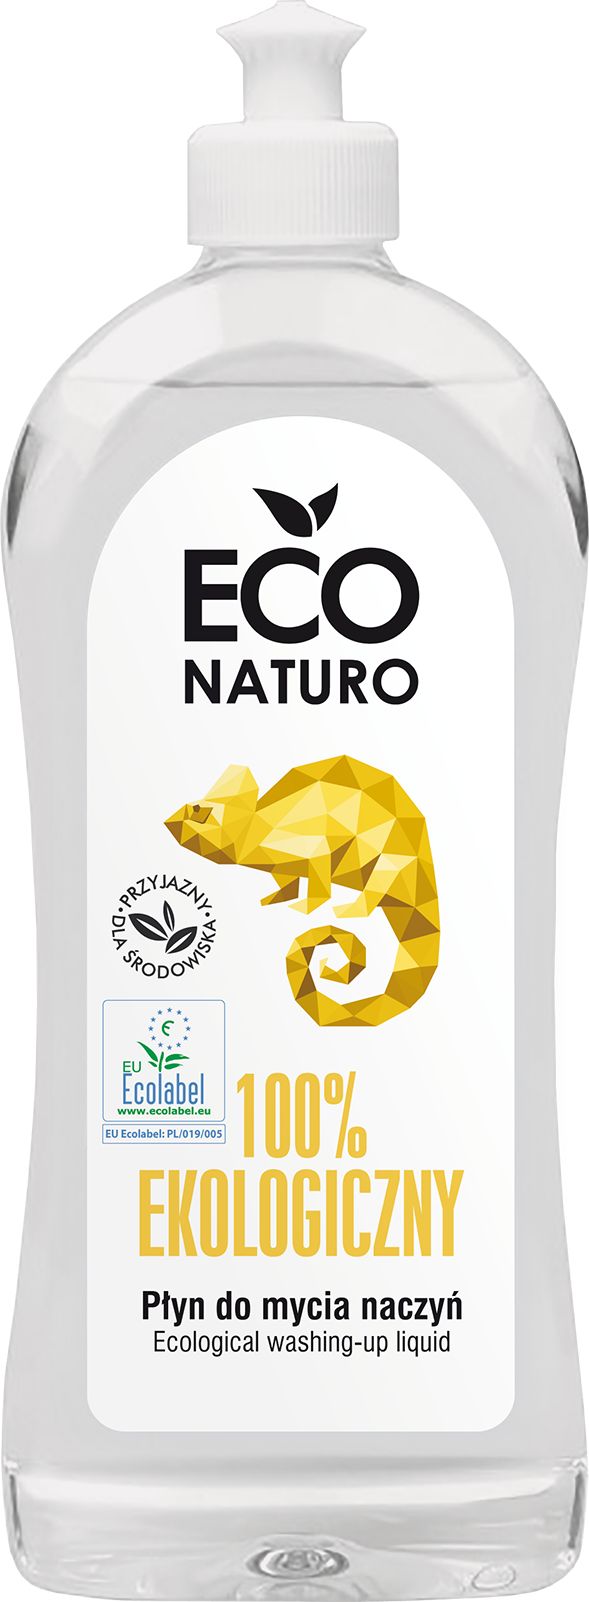 Eco Naturo Plyn do mycia naczyn - 500 ml EN-126076 (5901761103250) tīrīšanas līdzeklis